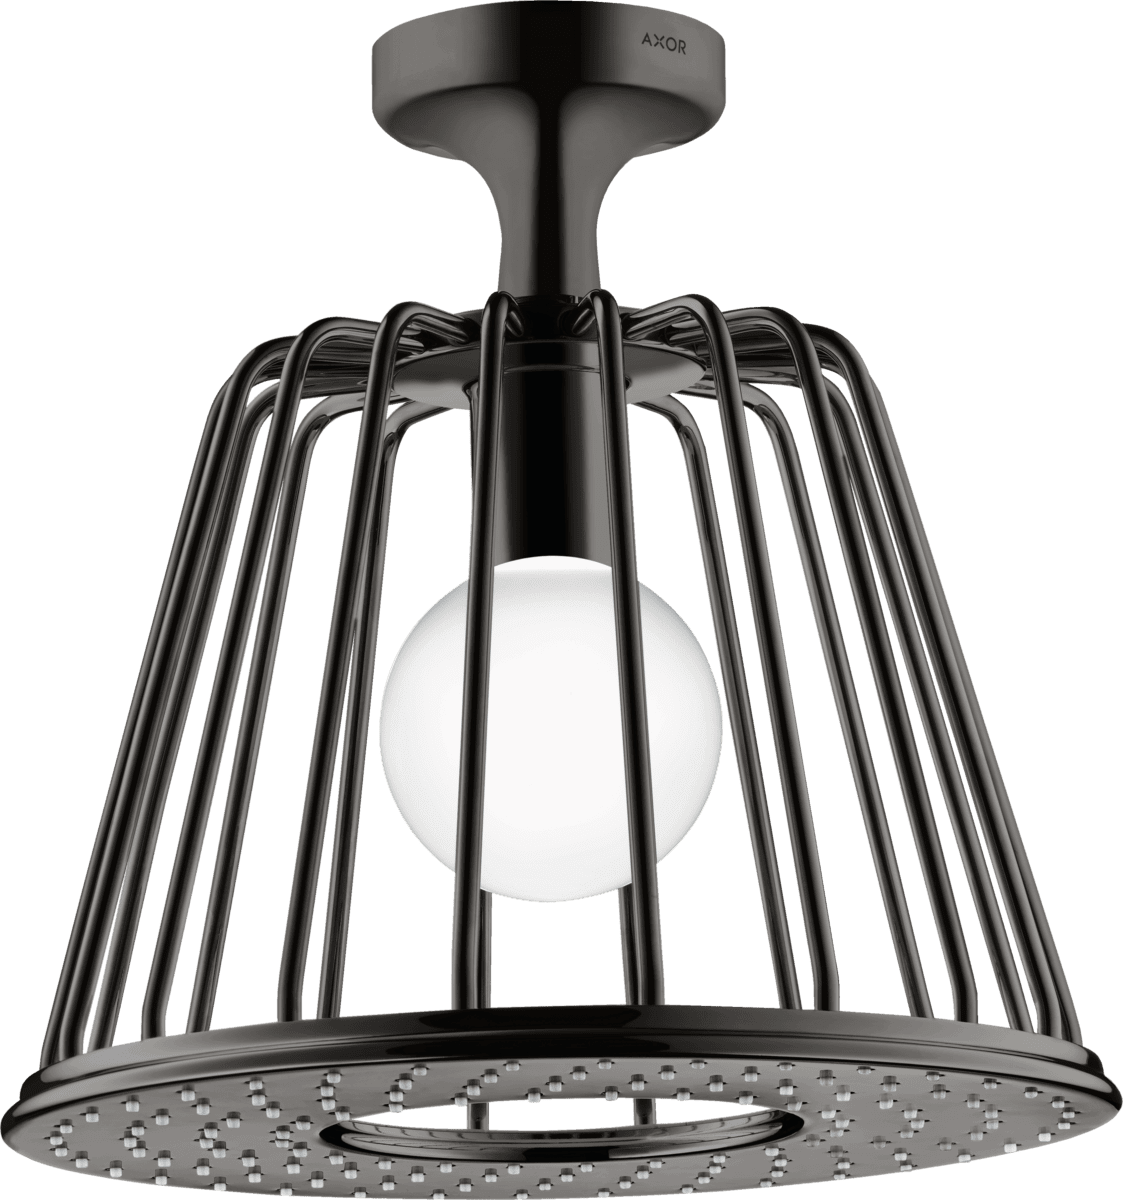 HANSGROHE AXOR LampShower/Nendo LampShower 275 1jet tavan bağlantılı #26032330 - Parlak Siyah Krom resmi